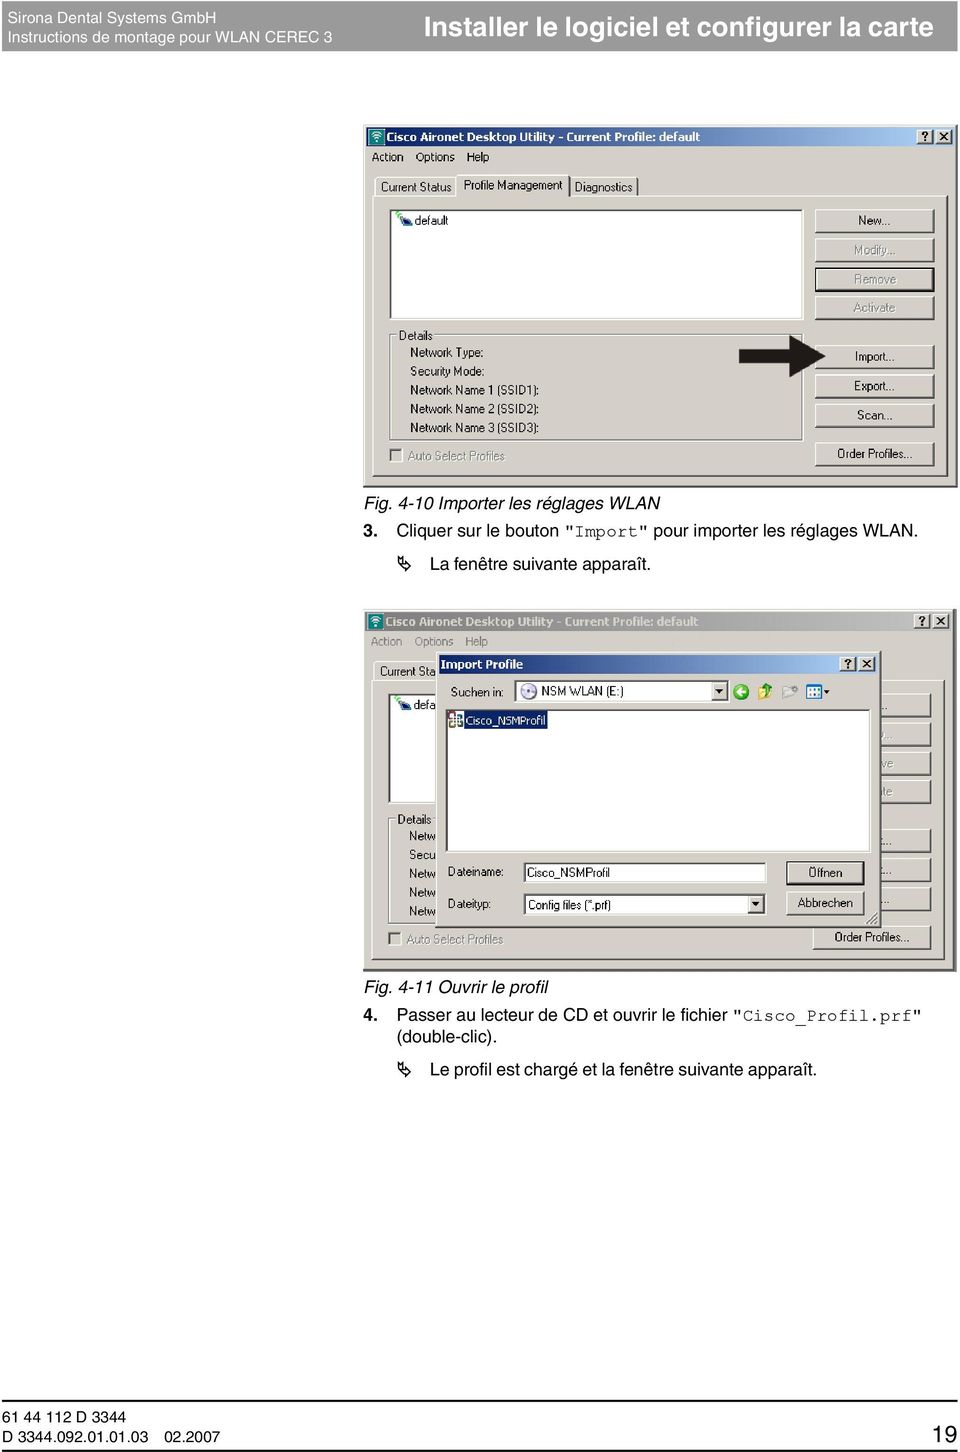 Fig. 4-11 Ouvrir le profil 4. Passer au lecteur de CD et ouvrir le fichier "Cisco_Profil.